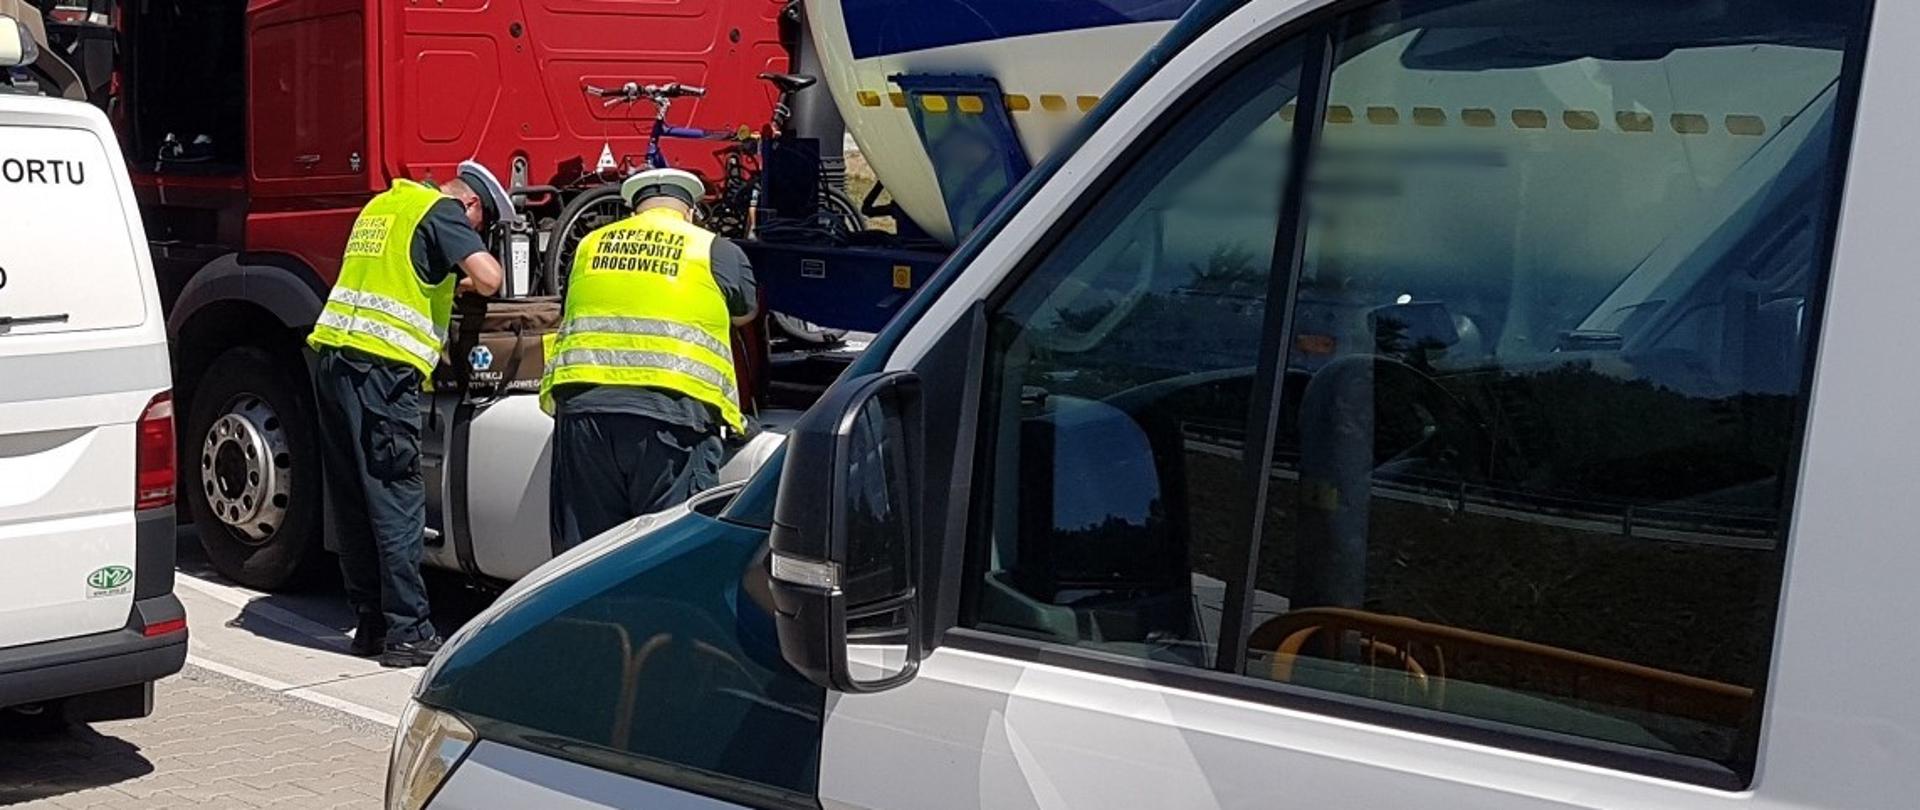 Na pierwszym planie przód oznakowanego radiowozu ITD typu furgon. W tle dwóch inspektorów ITD stoi obok ciężarówki i wyjmuje środki do udzielenia pierwszej pomocy z torby medycznej.